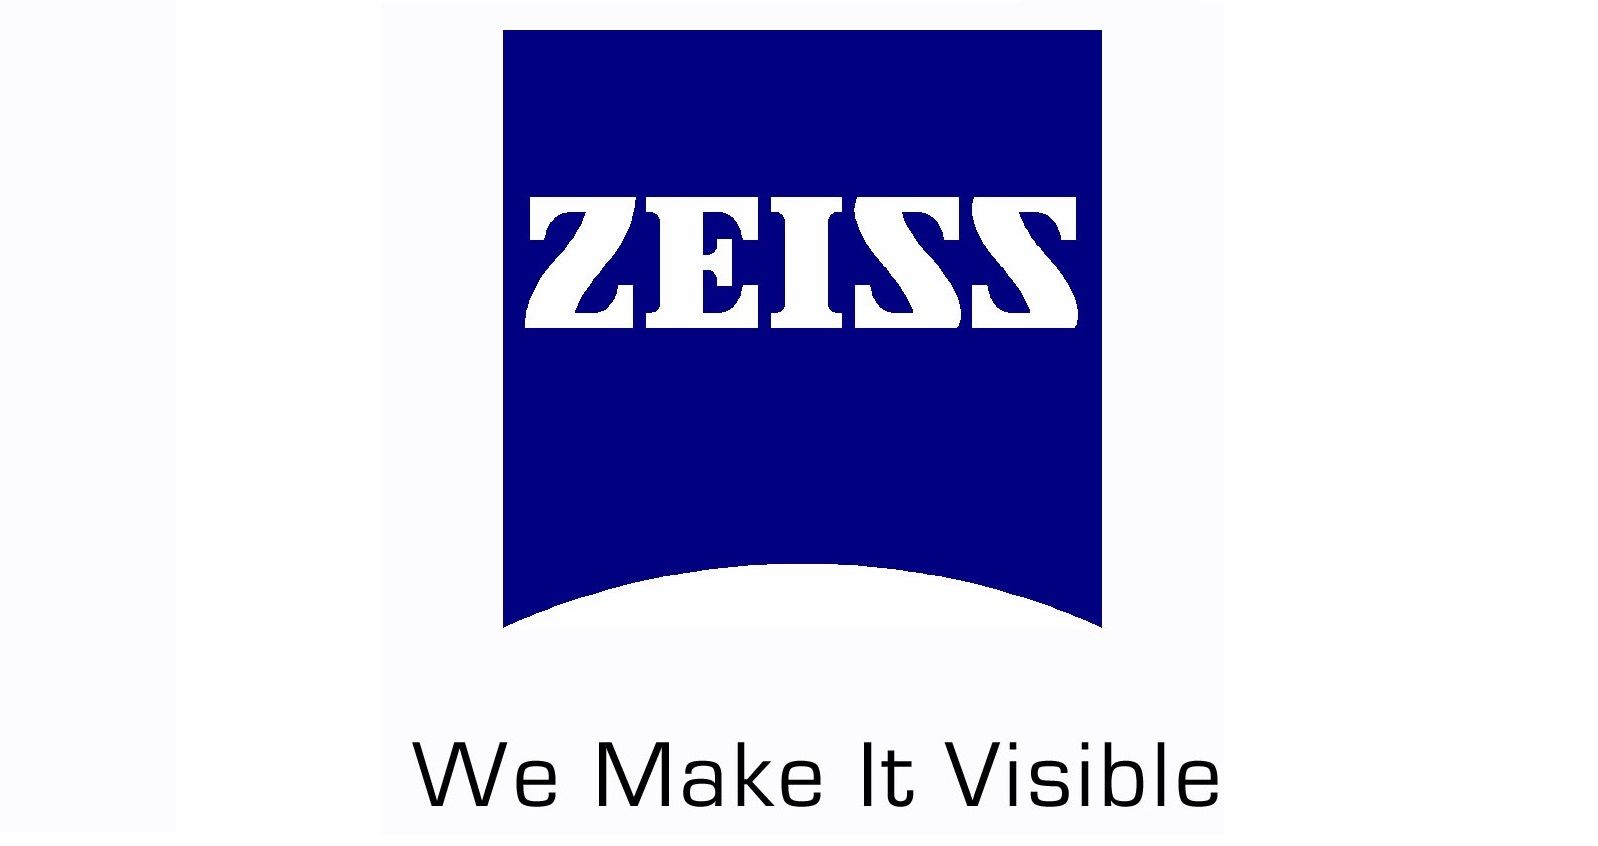 170 лет компании Carl Zeiss